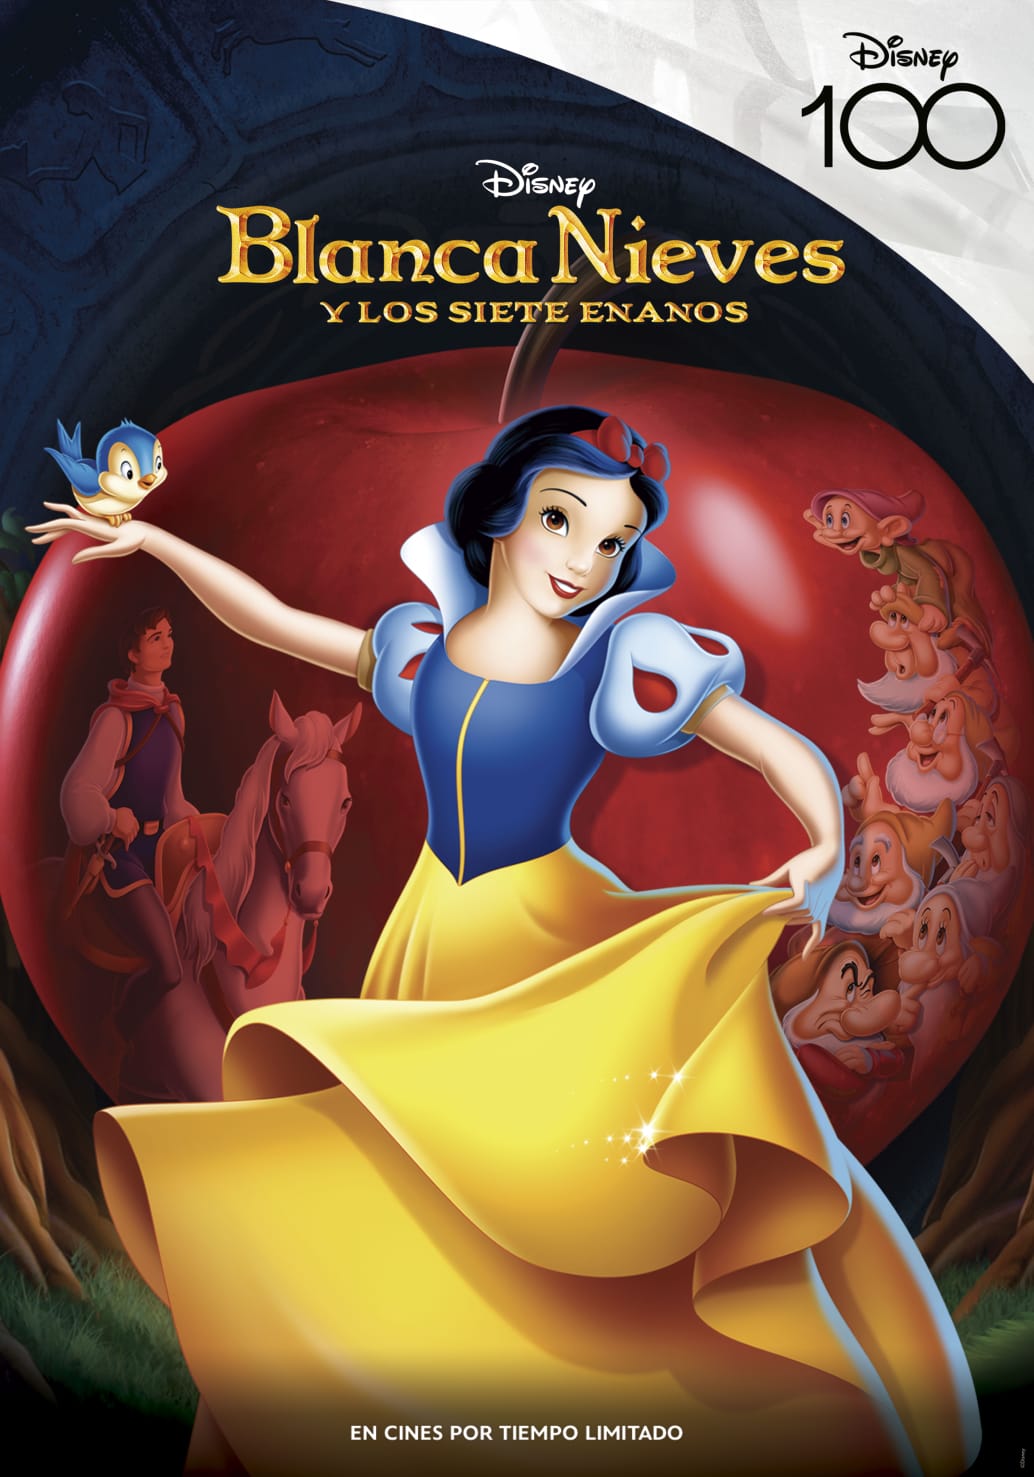 Los clásicos animados de Disney regresan a cines para celebrar su 100° Aniversario 8